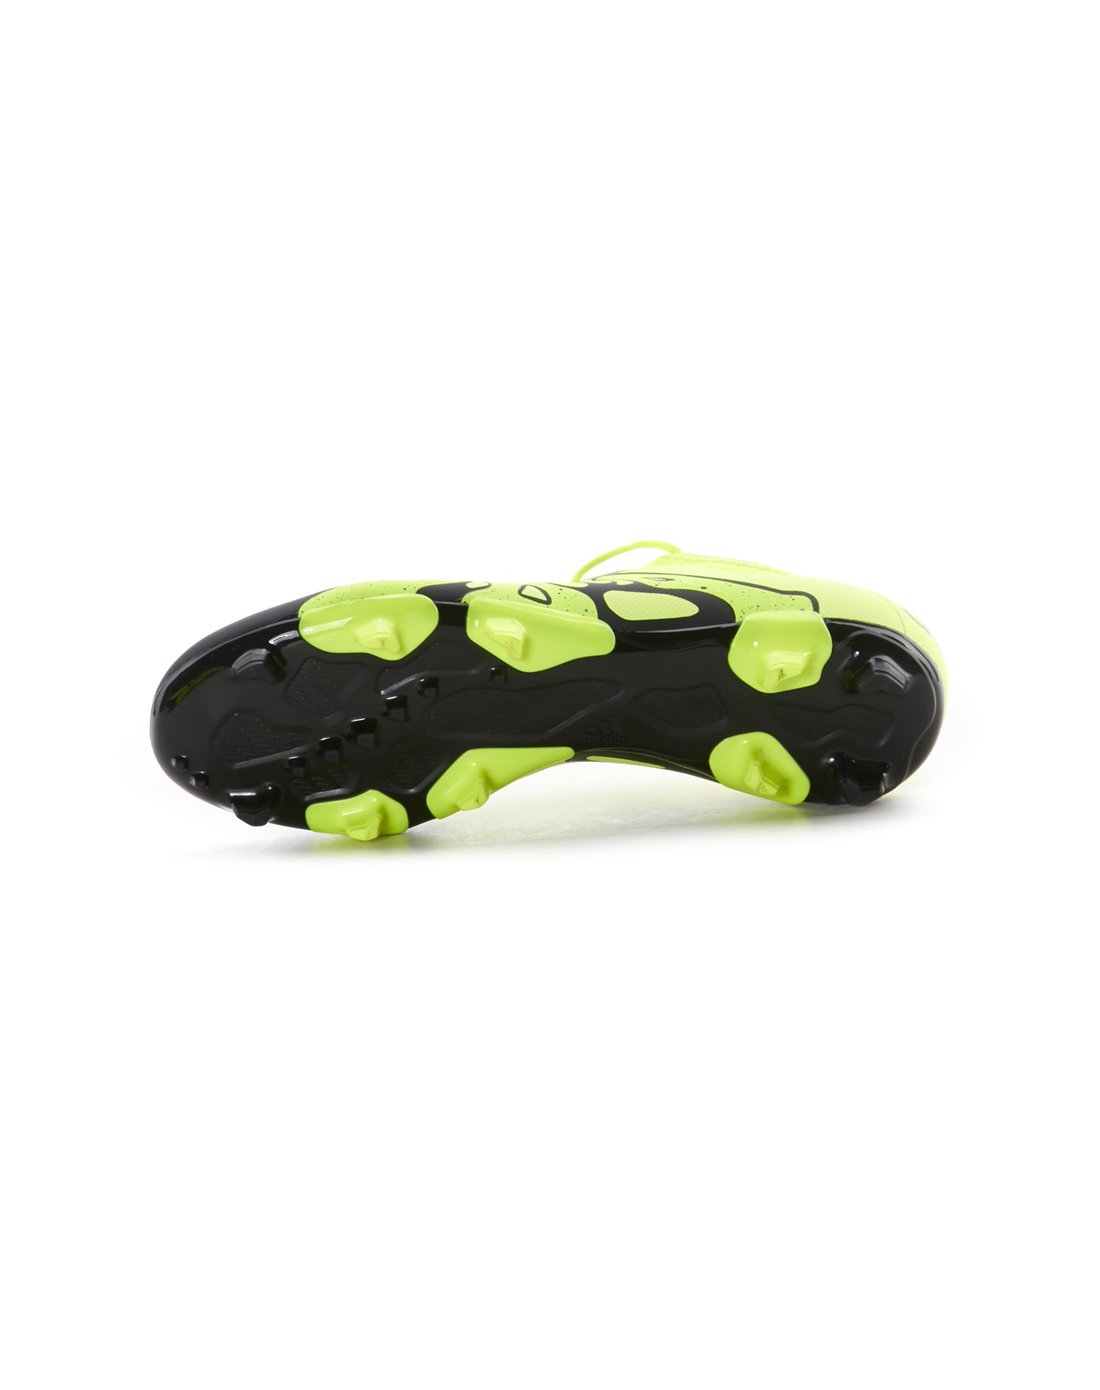 adidasX15.1 15.2 FG\/AG混合钉 男款绿色足球